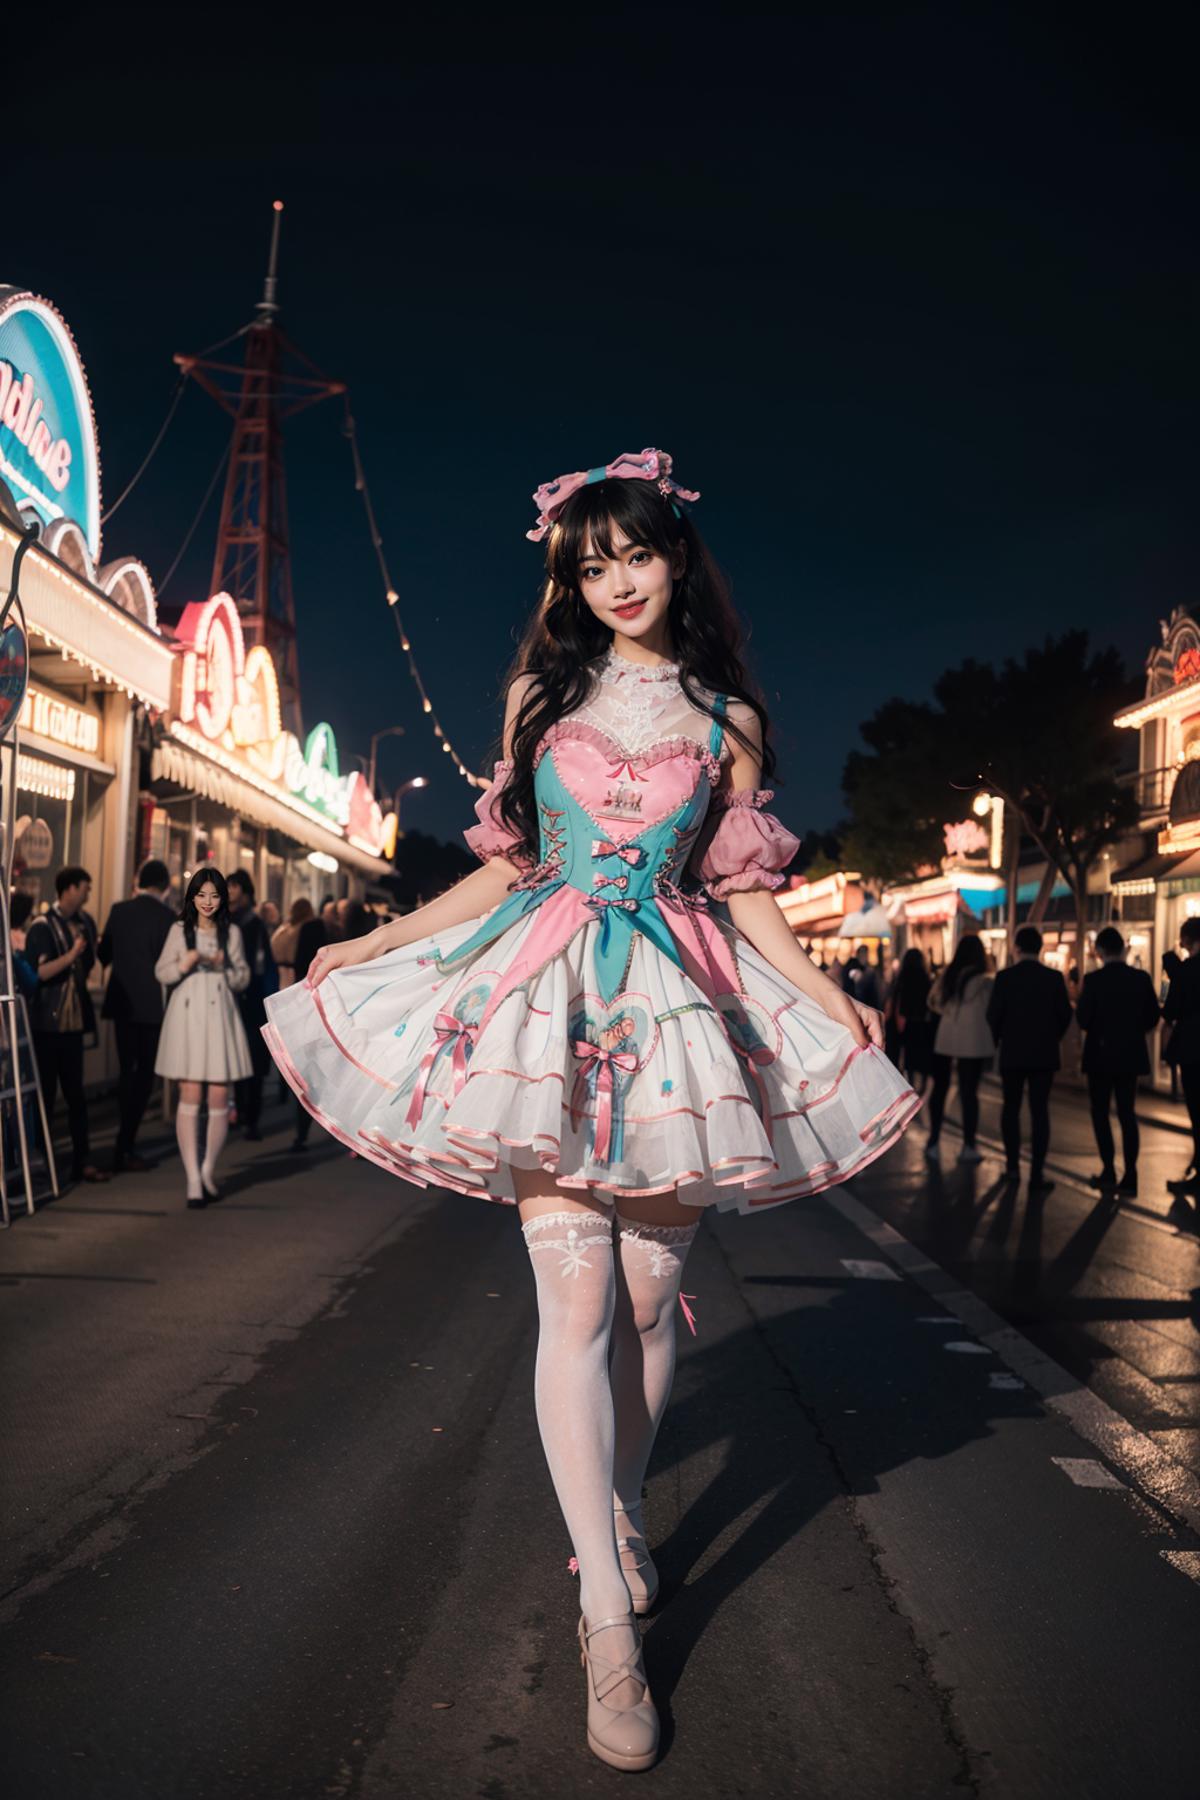 Sweet style dress | 甜美风裙子 image by cyberAngel_